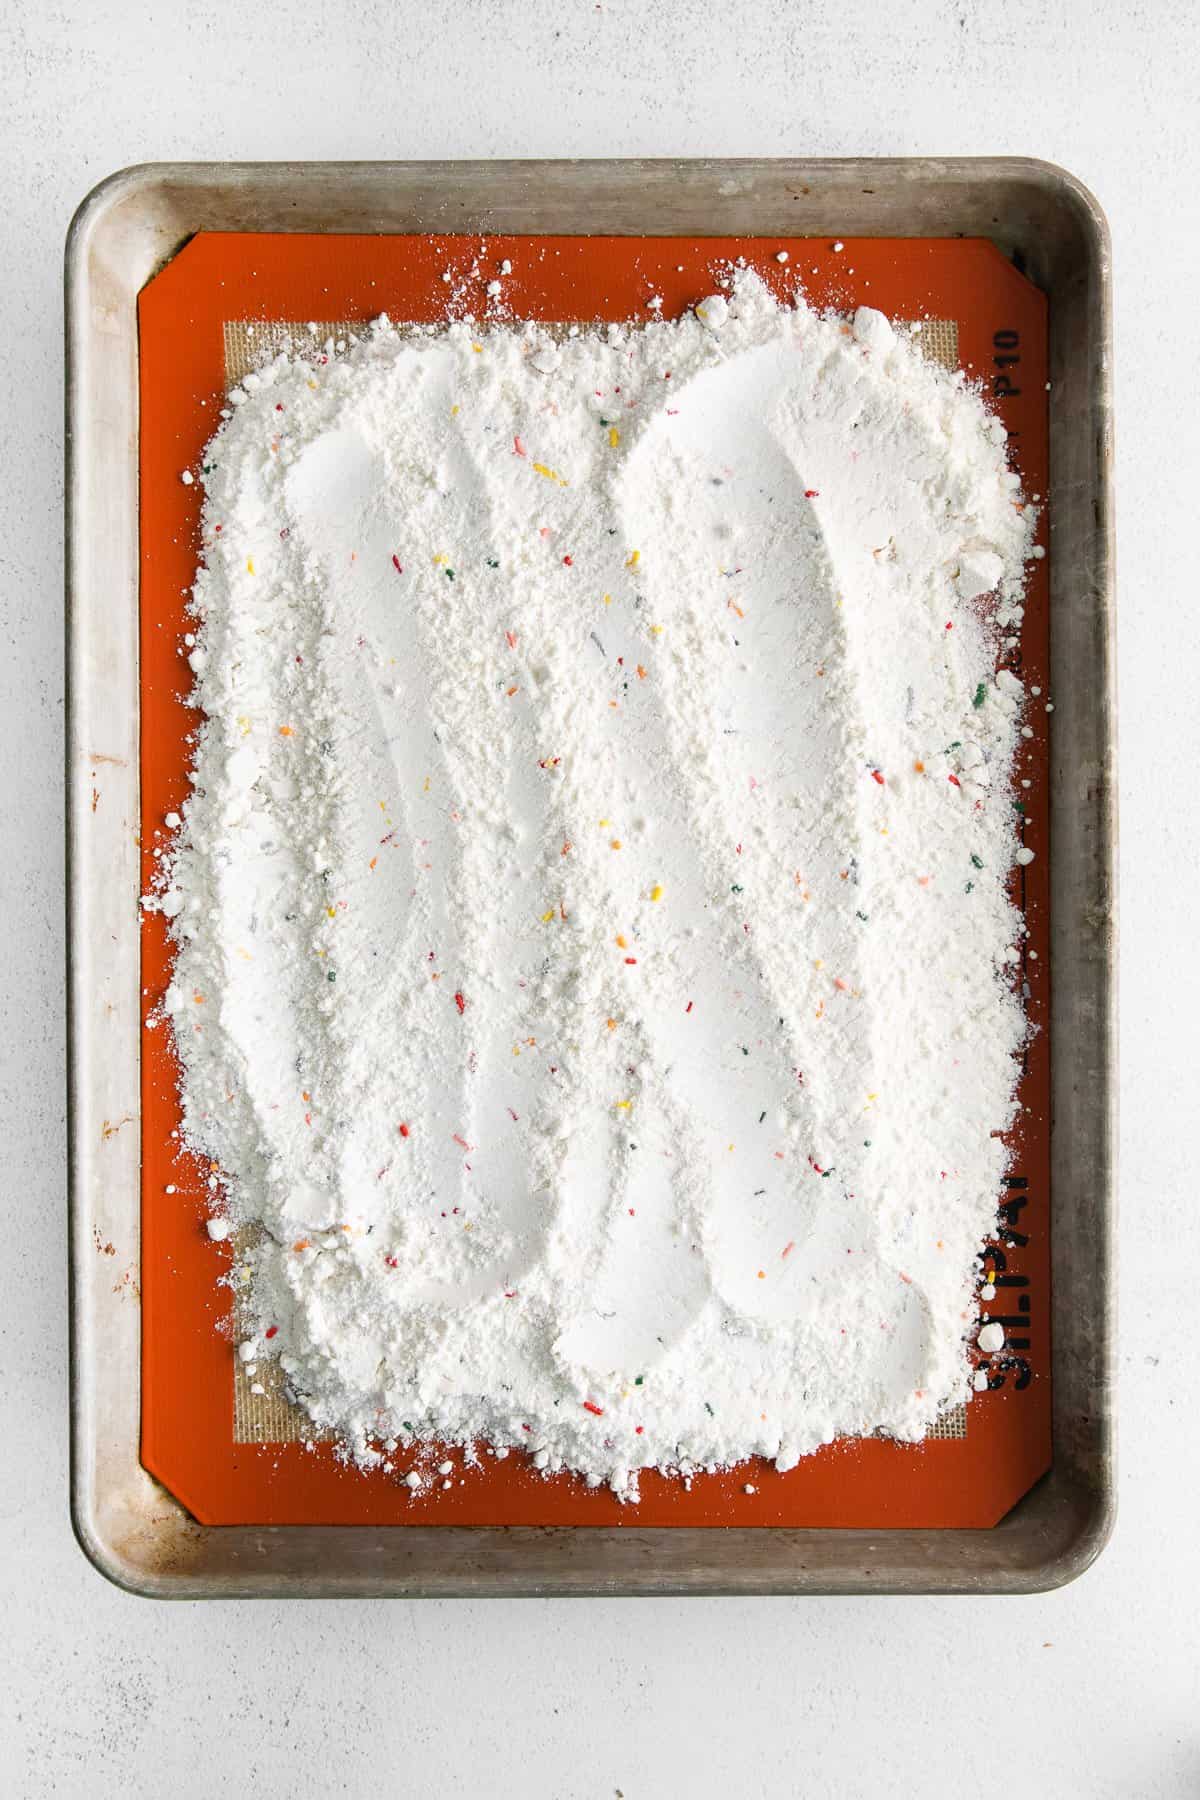 cake mix on baking sheet.